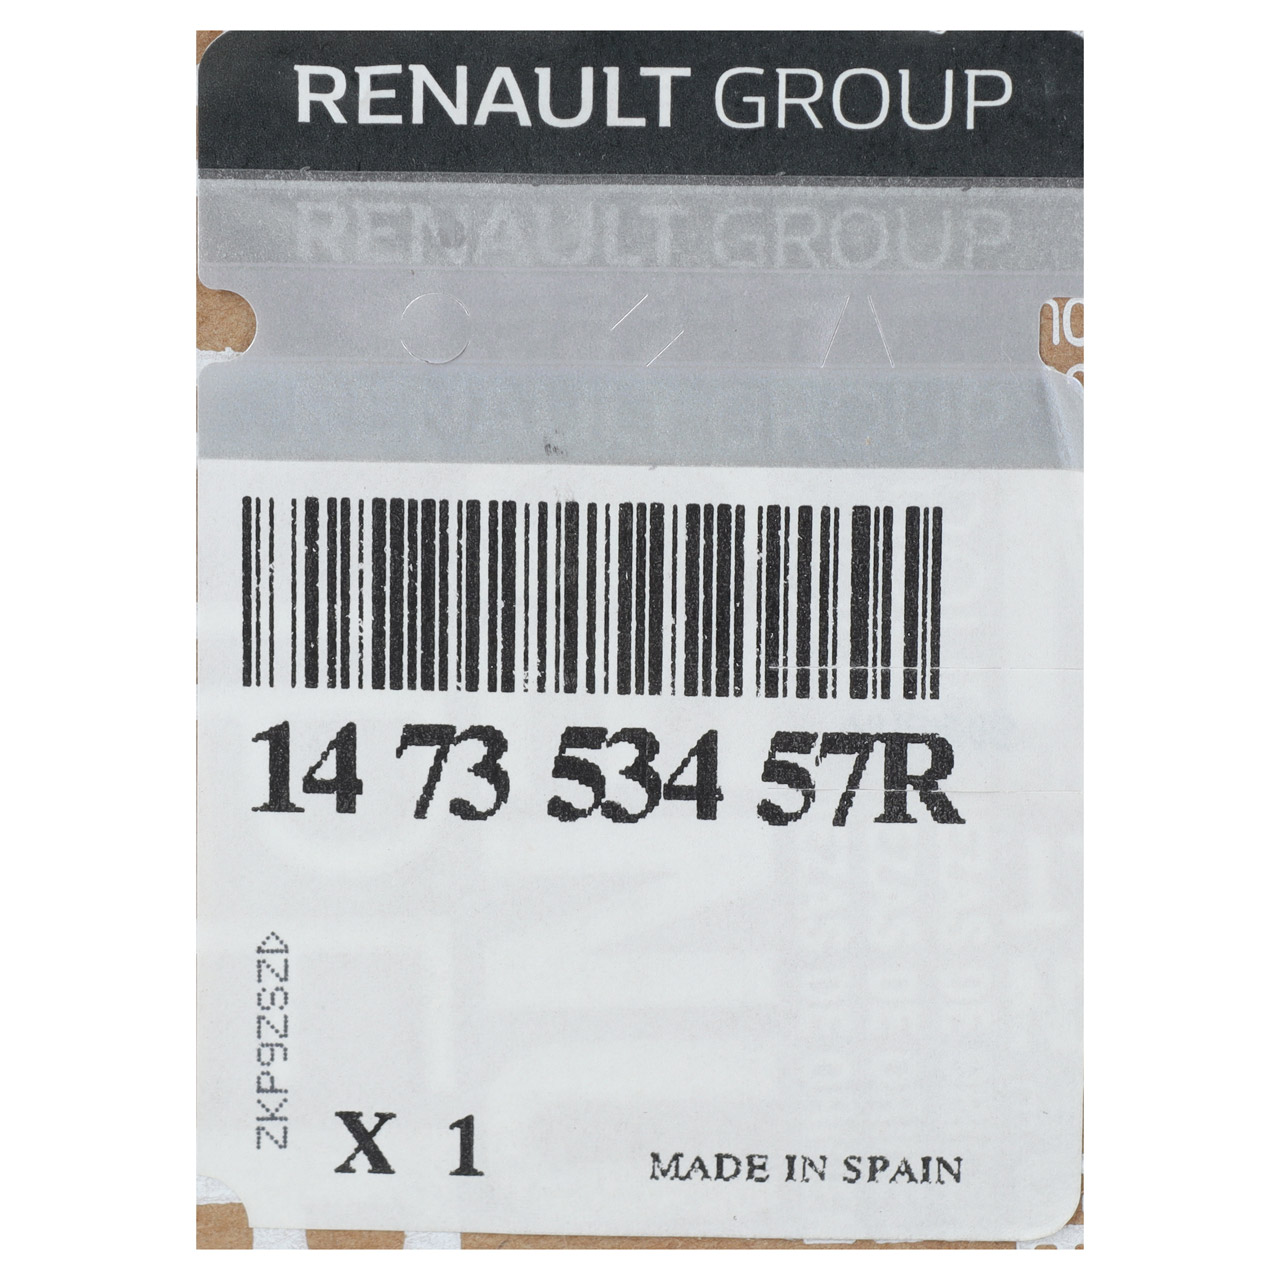 ORIGINAL Renault AGR-Modul AGR-Kühler Abgaskühler Master 3 2.3 dCi 147353457R